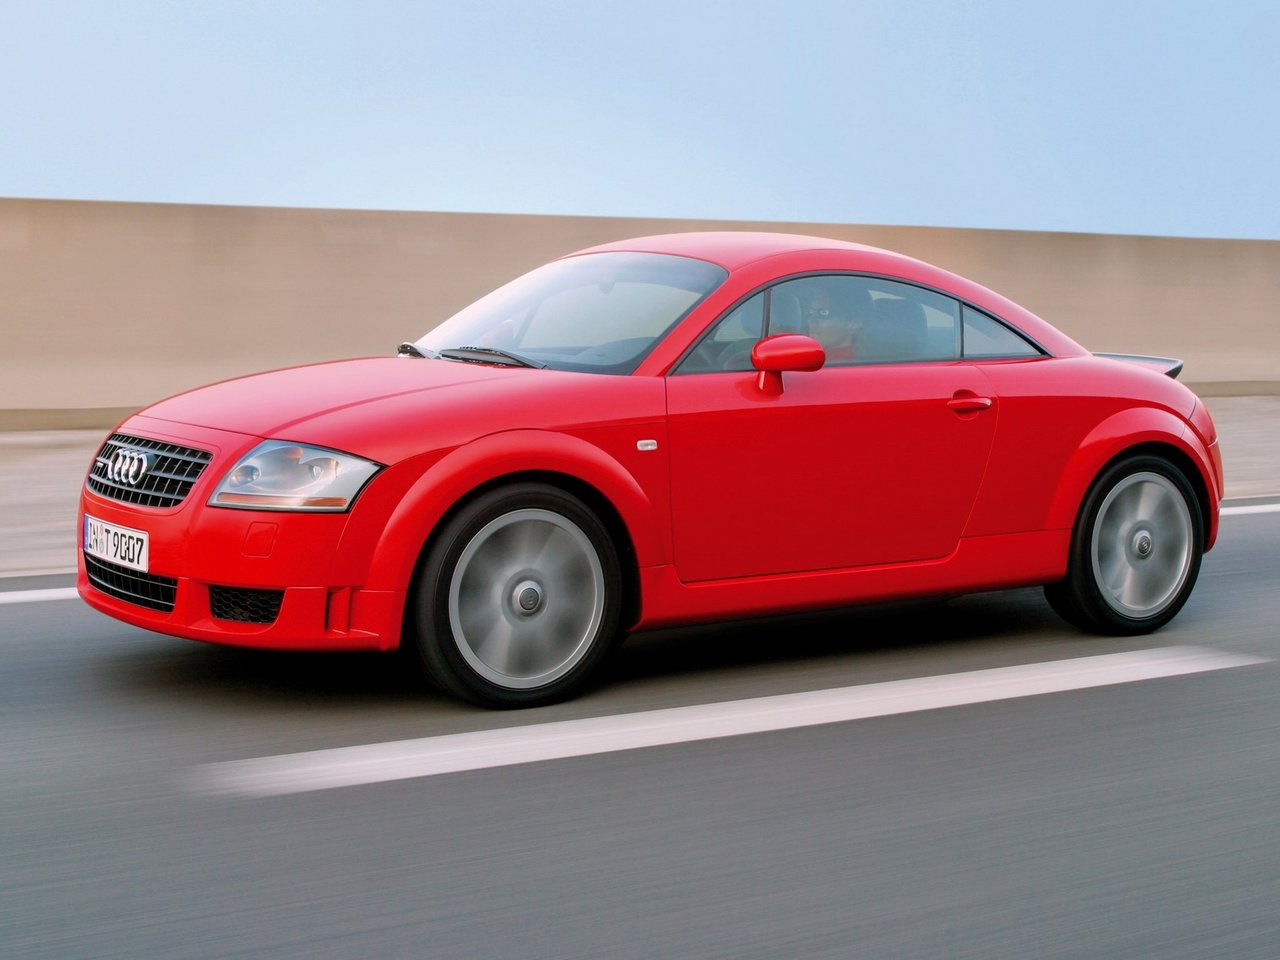 Снижаем расход Audi TT на топливо, устанавливаем ГБО